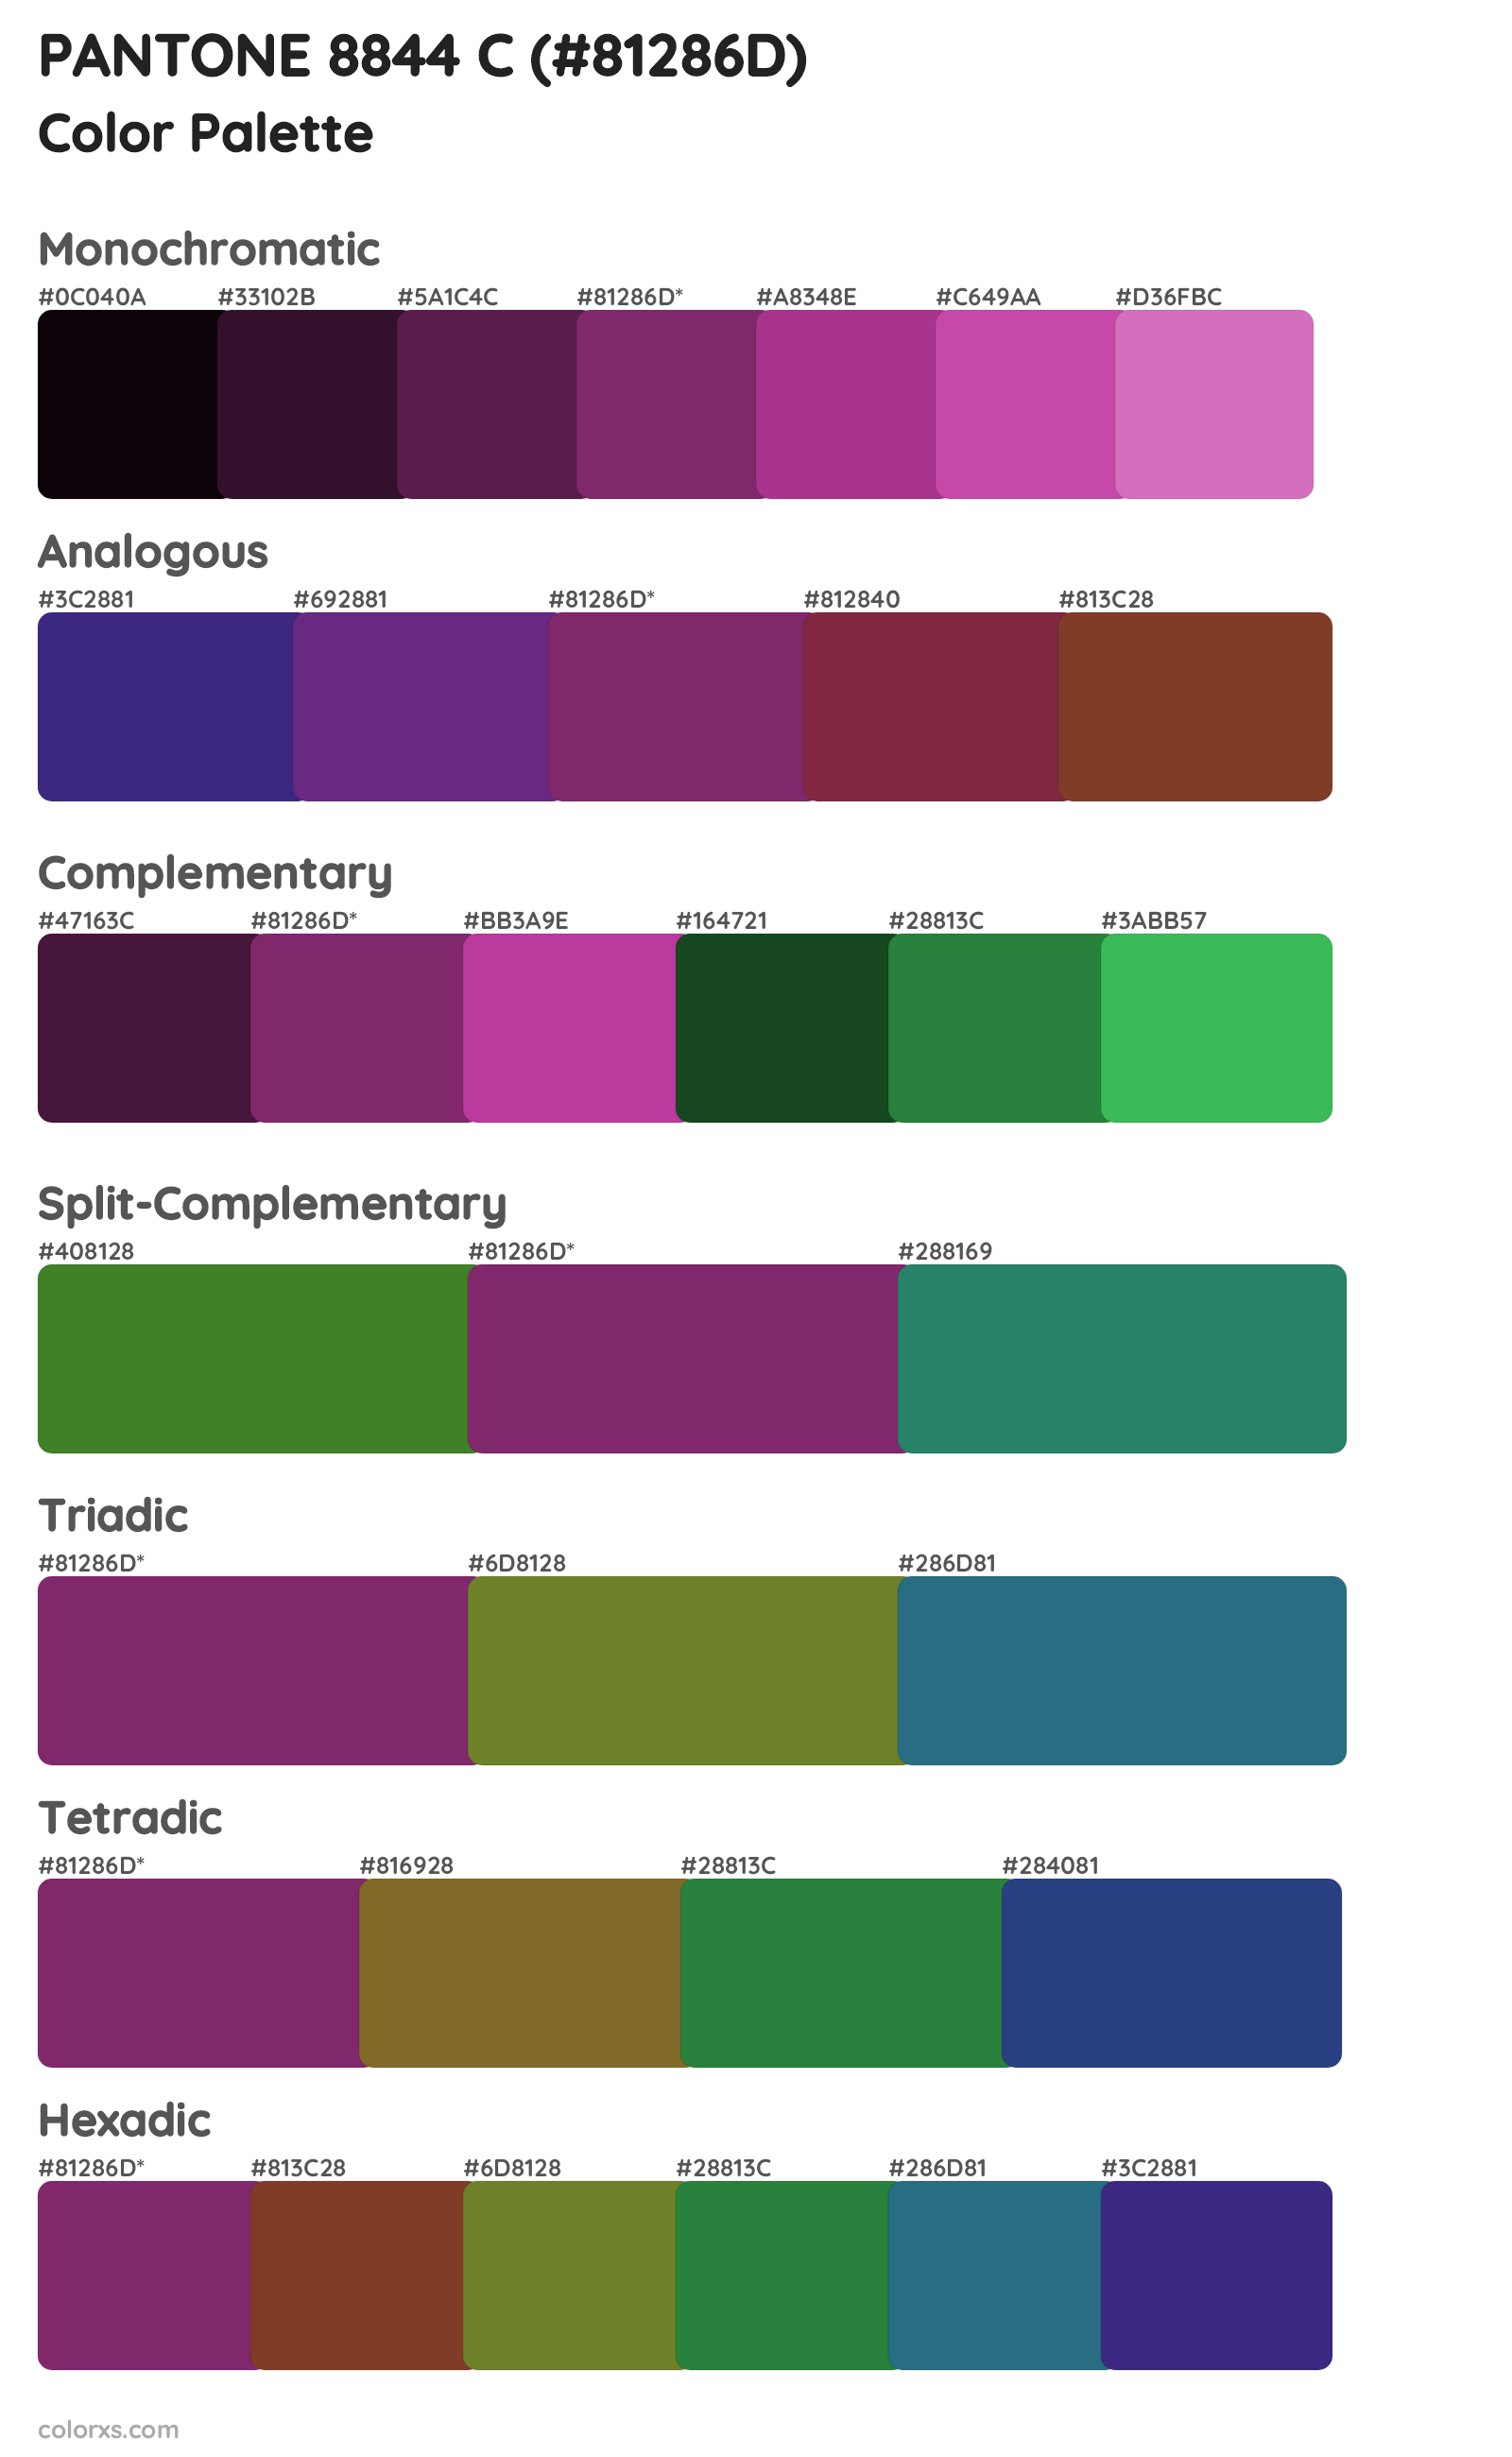 PANTONE 8844 C Color Scheme Palettes